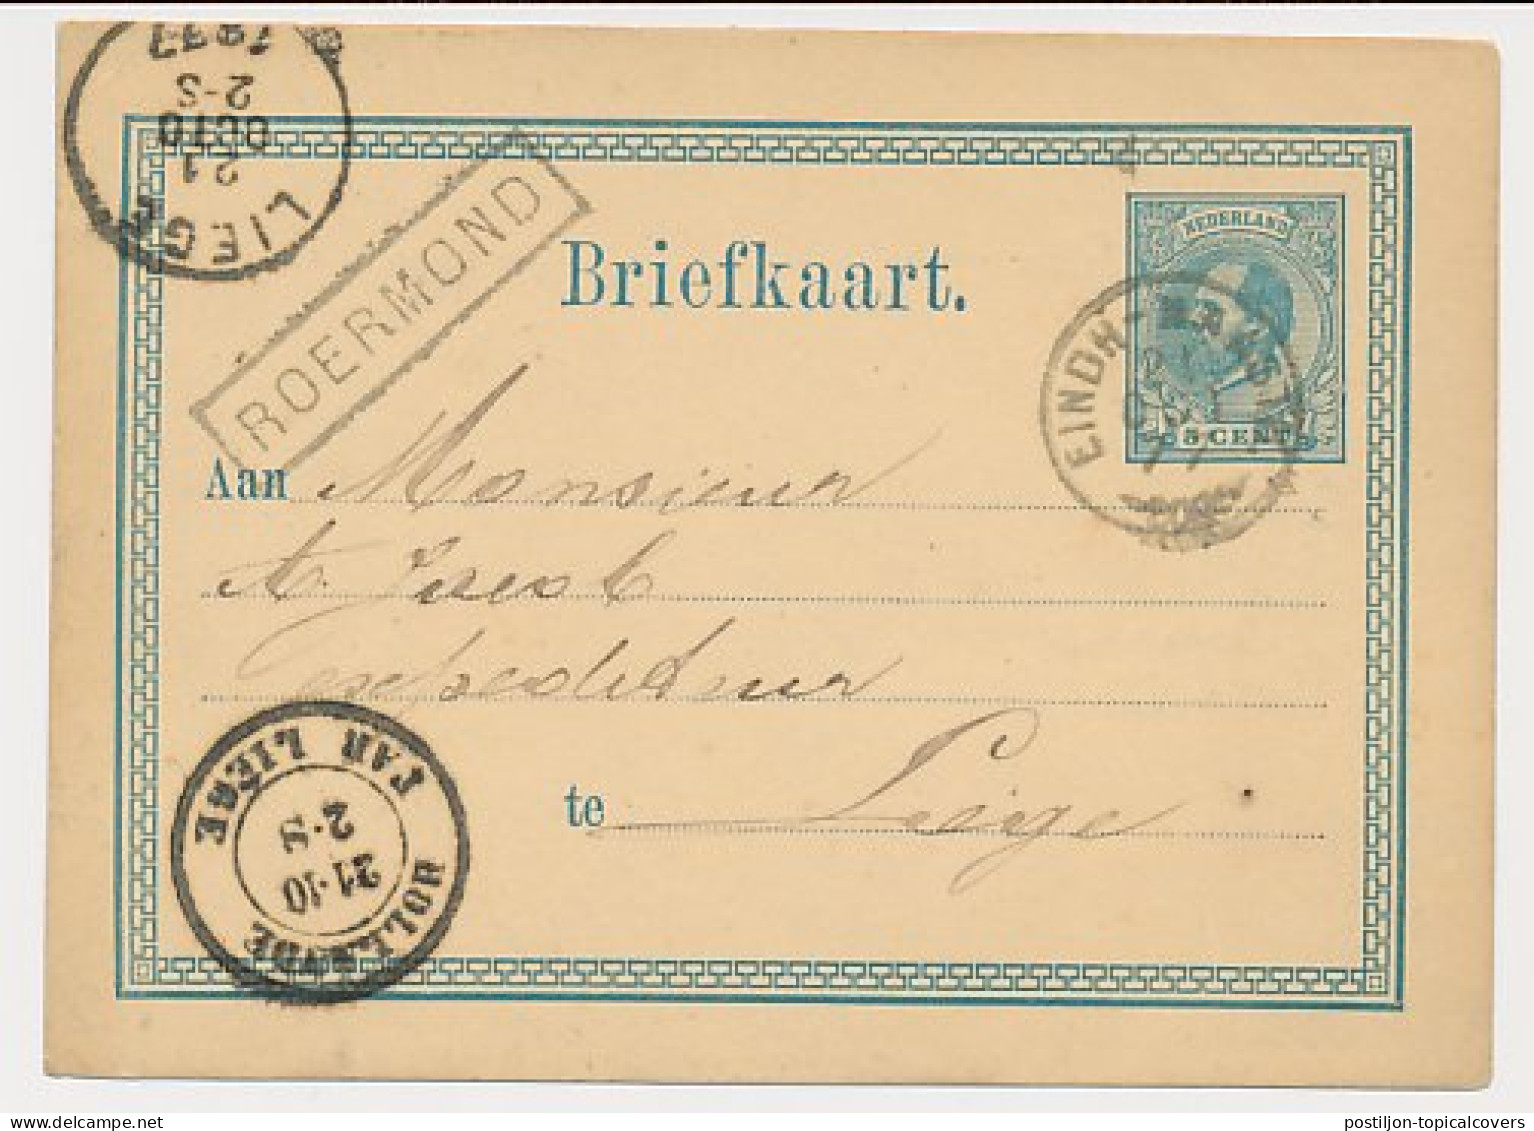 Trein Haltestempel Roermond 1877 - Briefe U. Dokumente